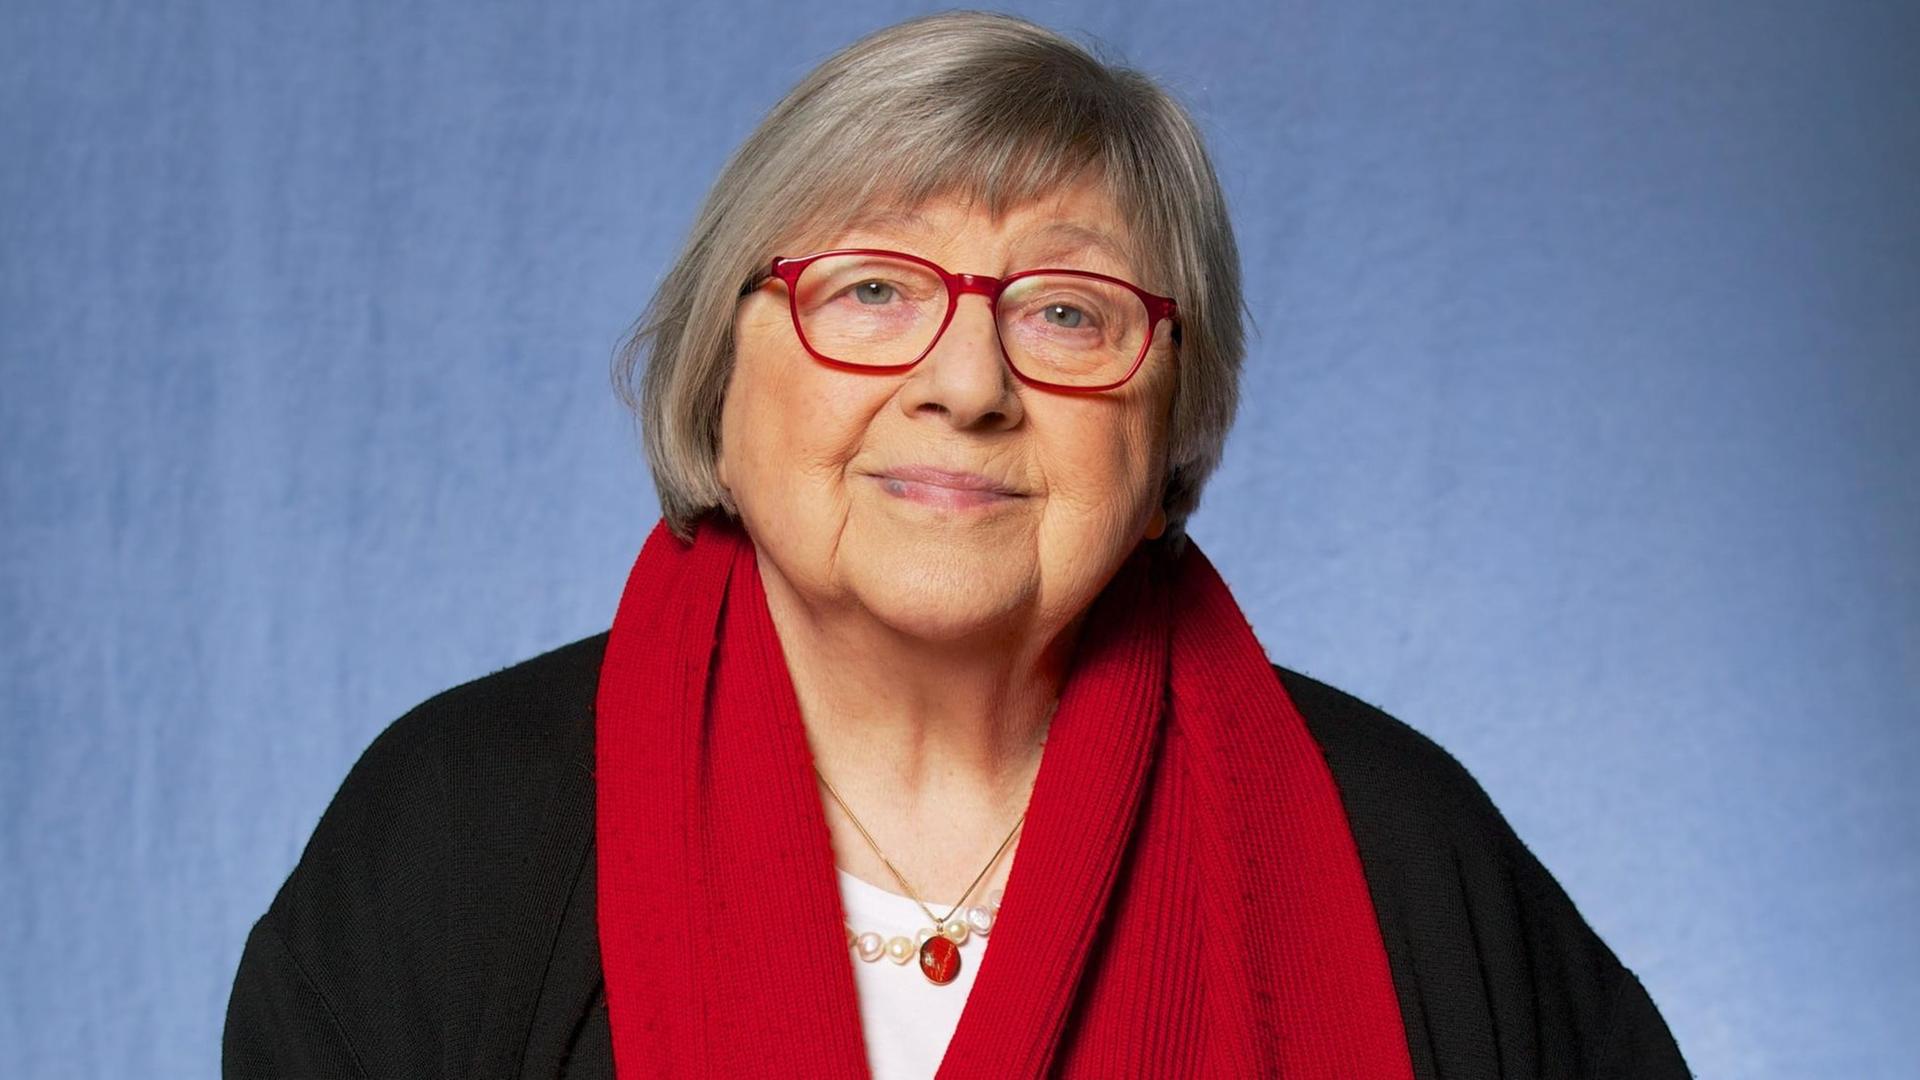 Sybil Gräfin Schönfeldt, österreichisch-deutsche Schriftstellerin, aufgenommen am 22.02.2015 in Mainz.